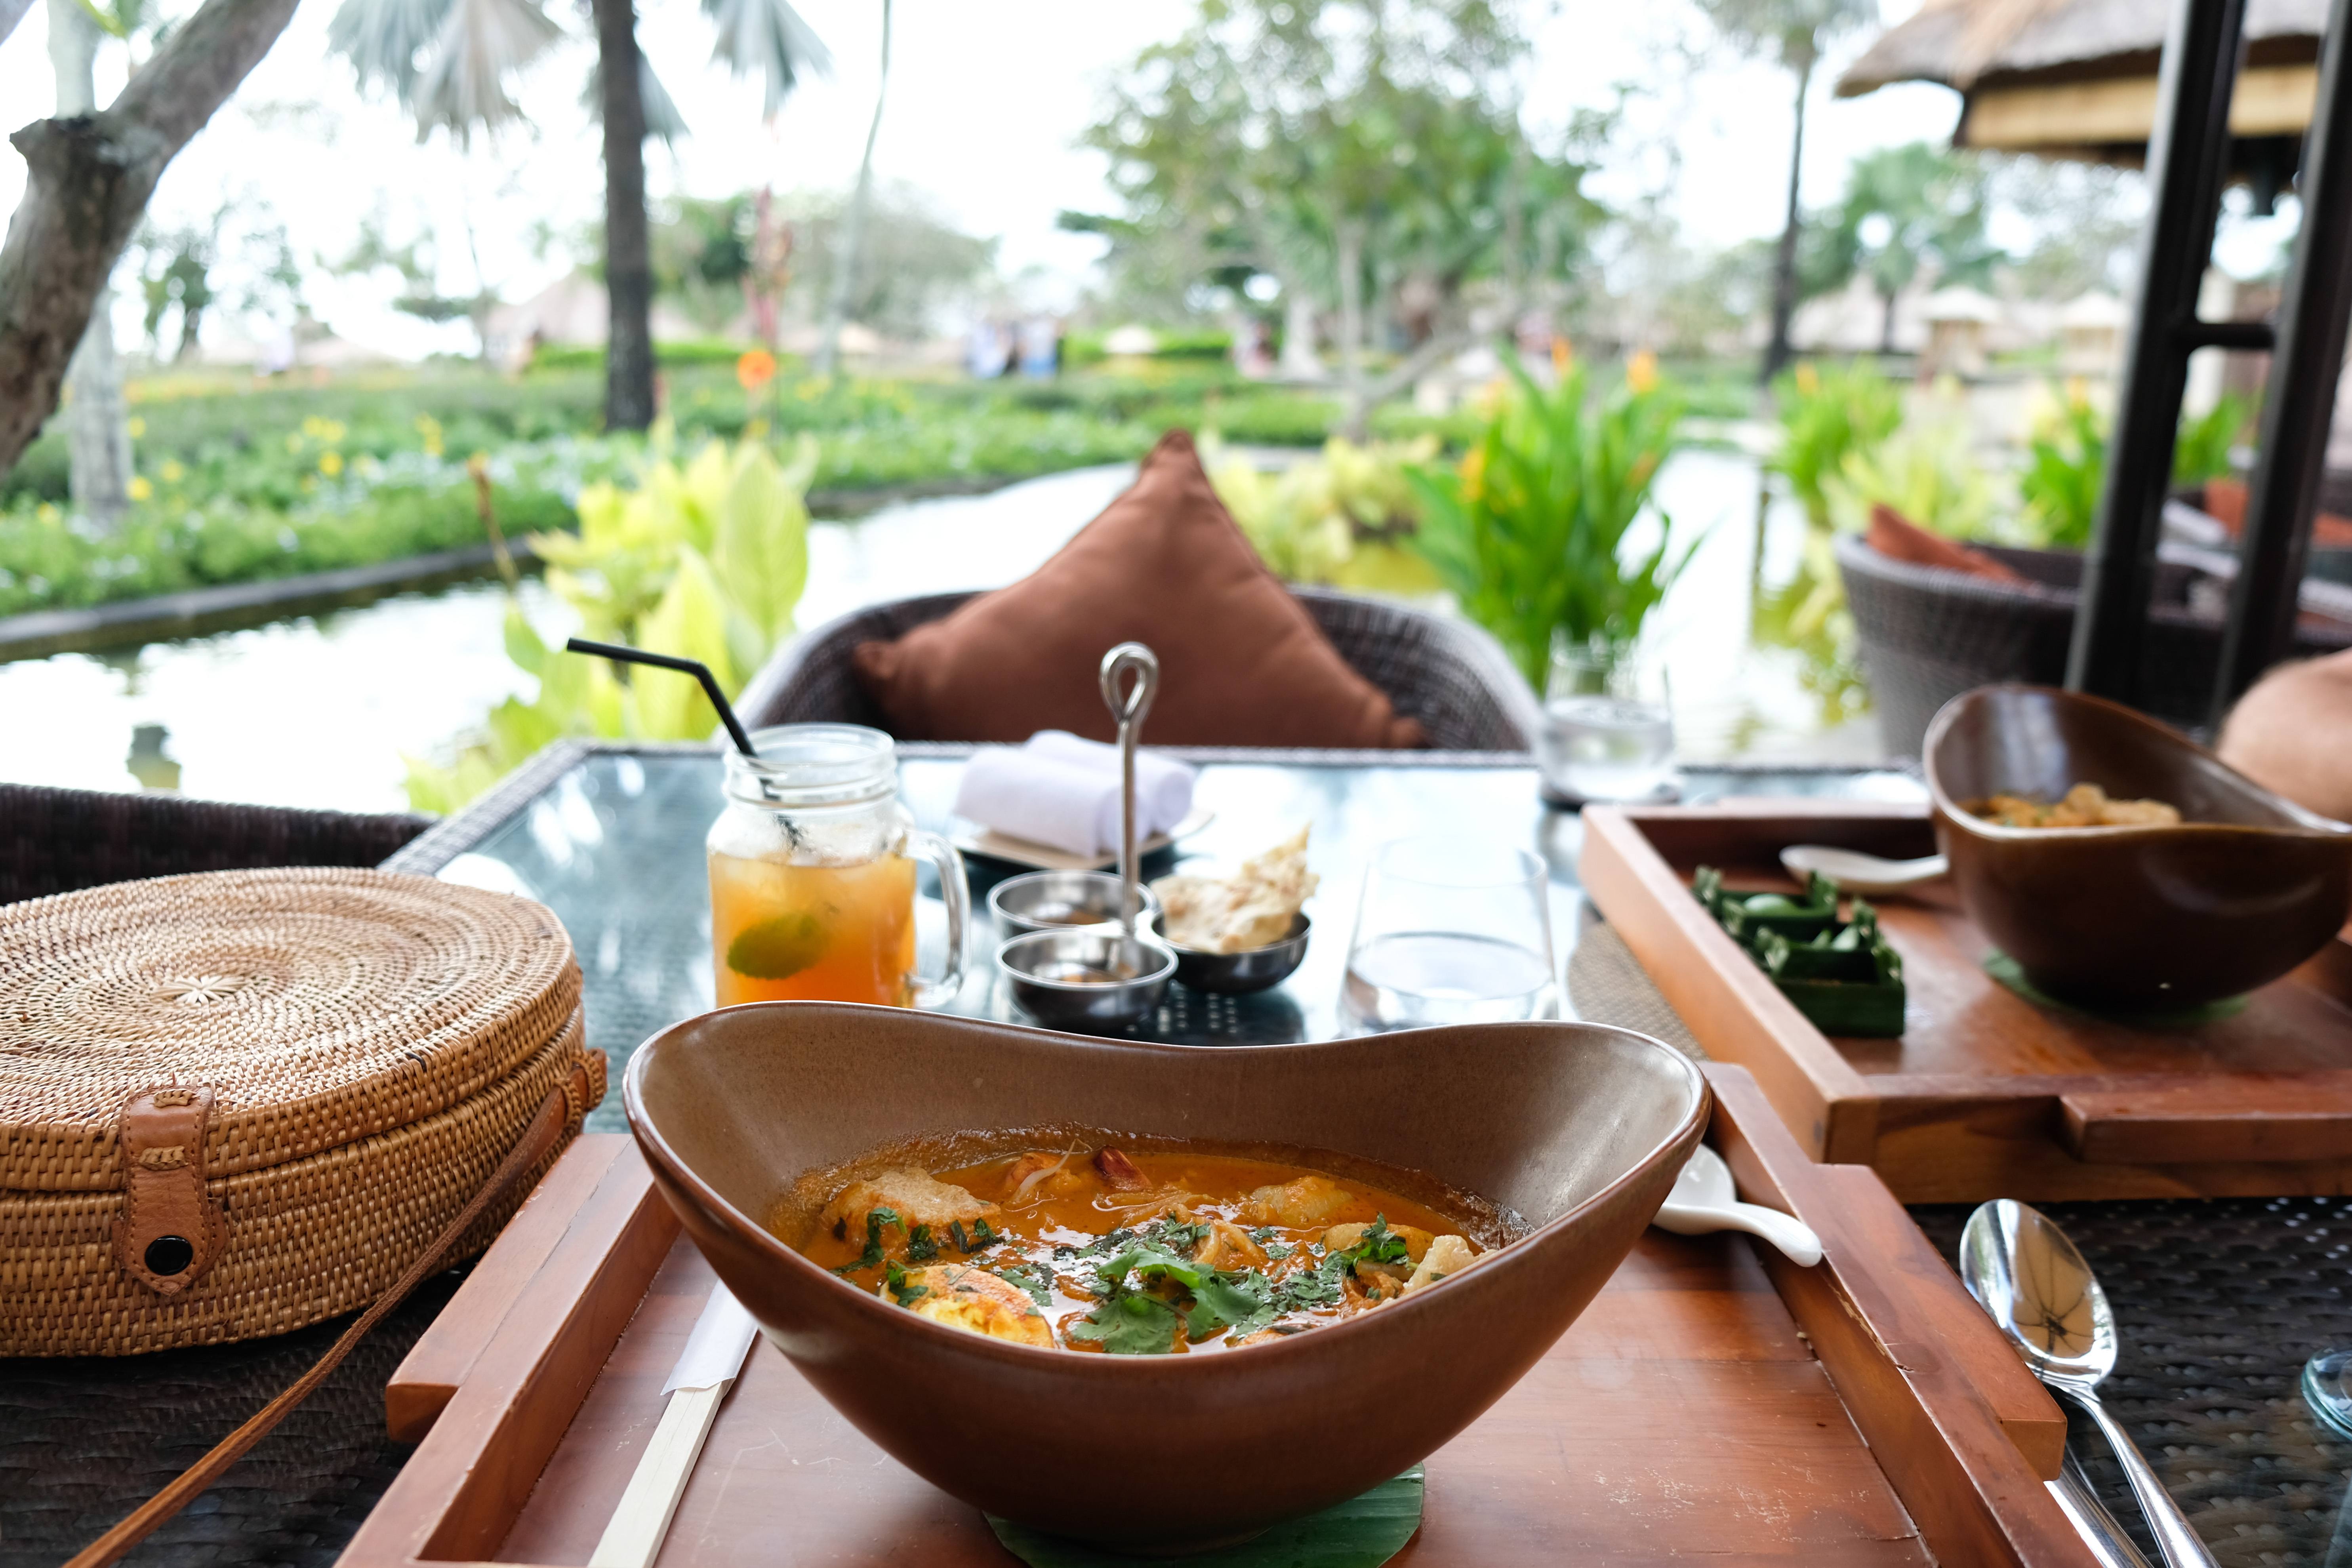 Food at AYANA Resort in Bali